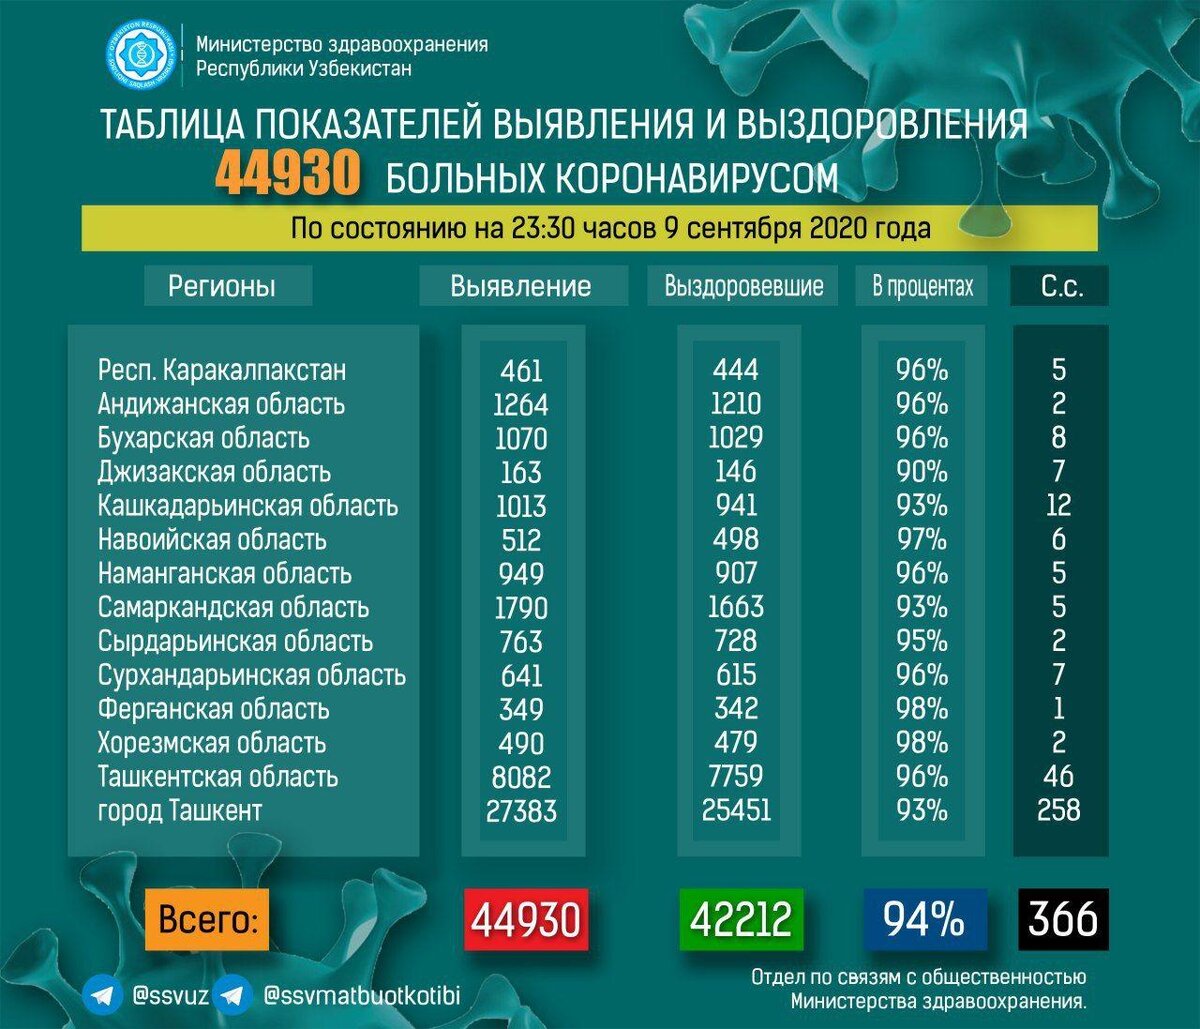 Сколько заболевших коронавирусом в белгородской. Коронавирус статистика в Узбекистане. Коронавирус статистика за 2020. Коронавирум вузбекисьане. Статистика больных коронавирусом.